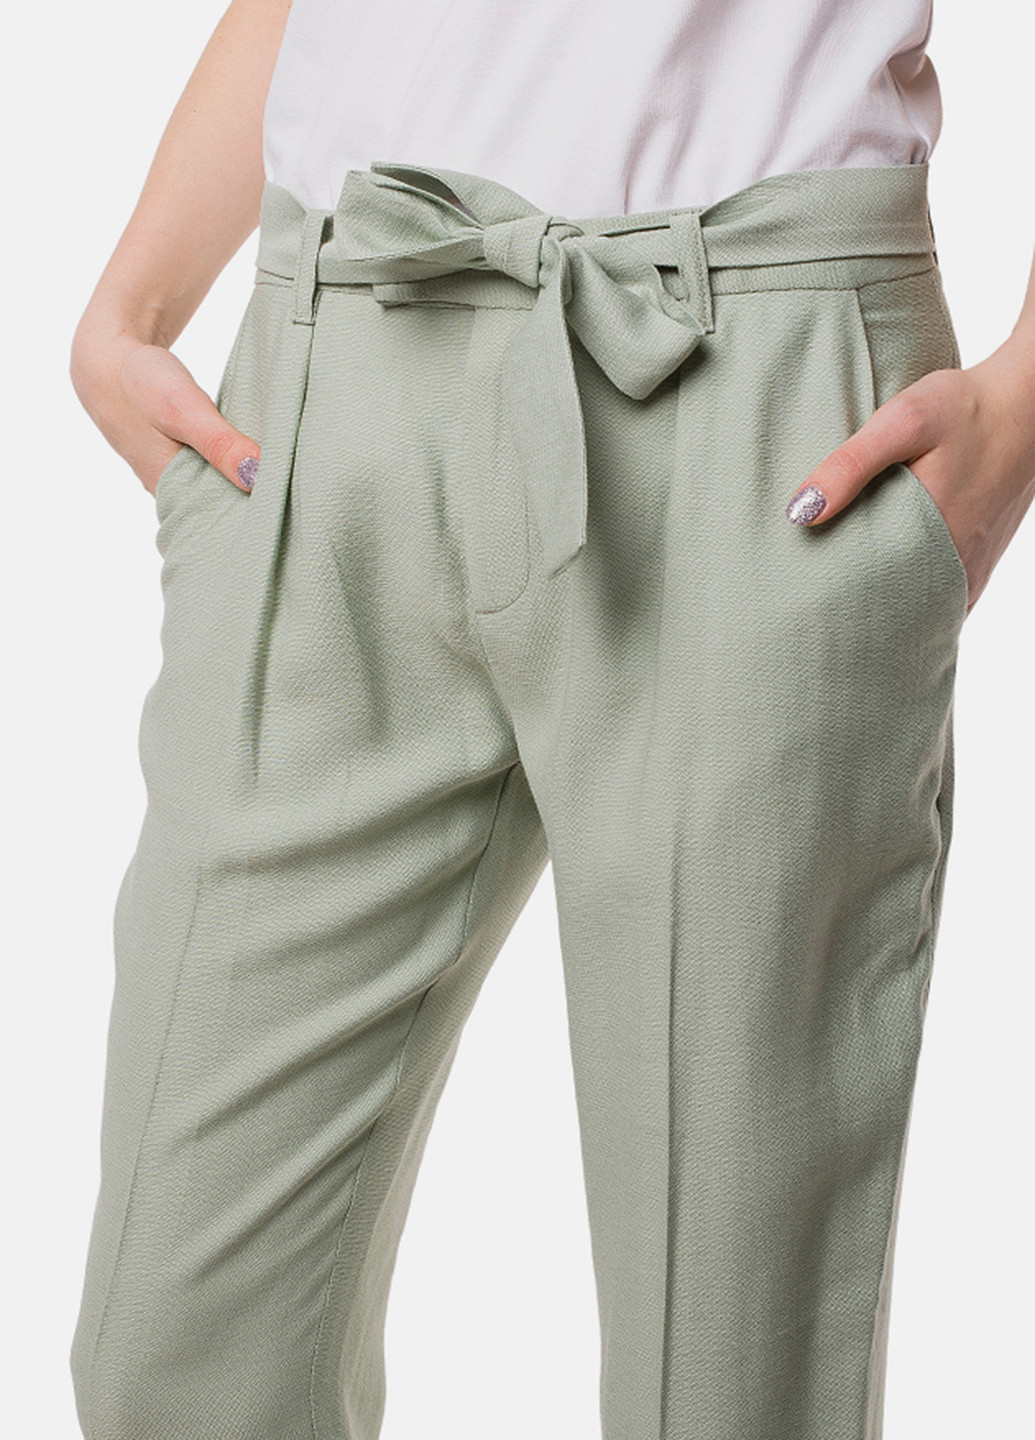 Оливково-зеленые кэжуал демисезонные брюки MR 520